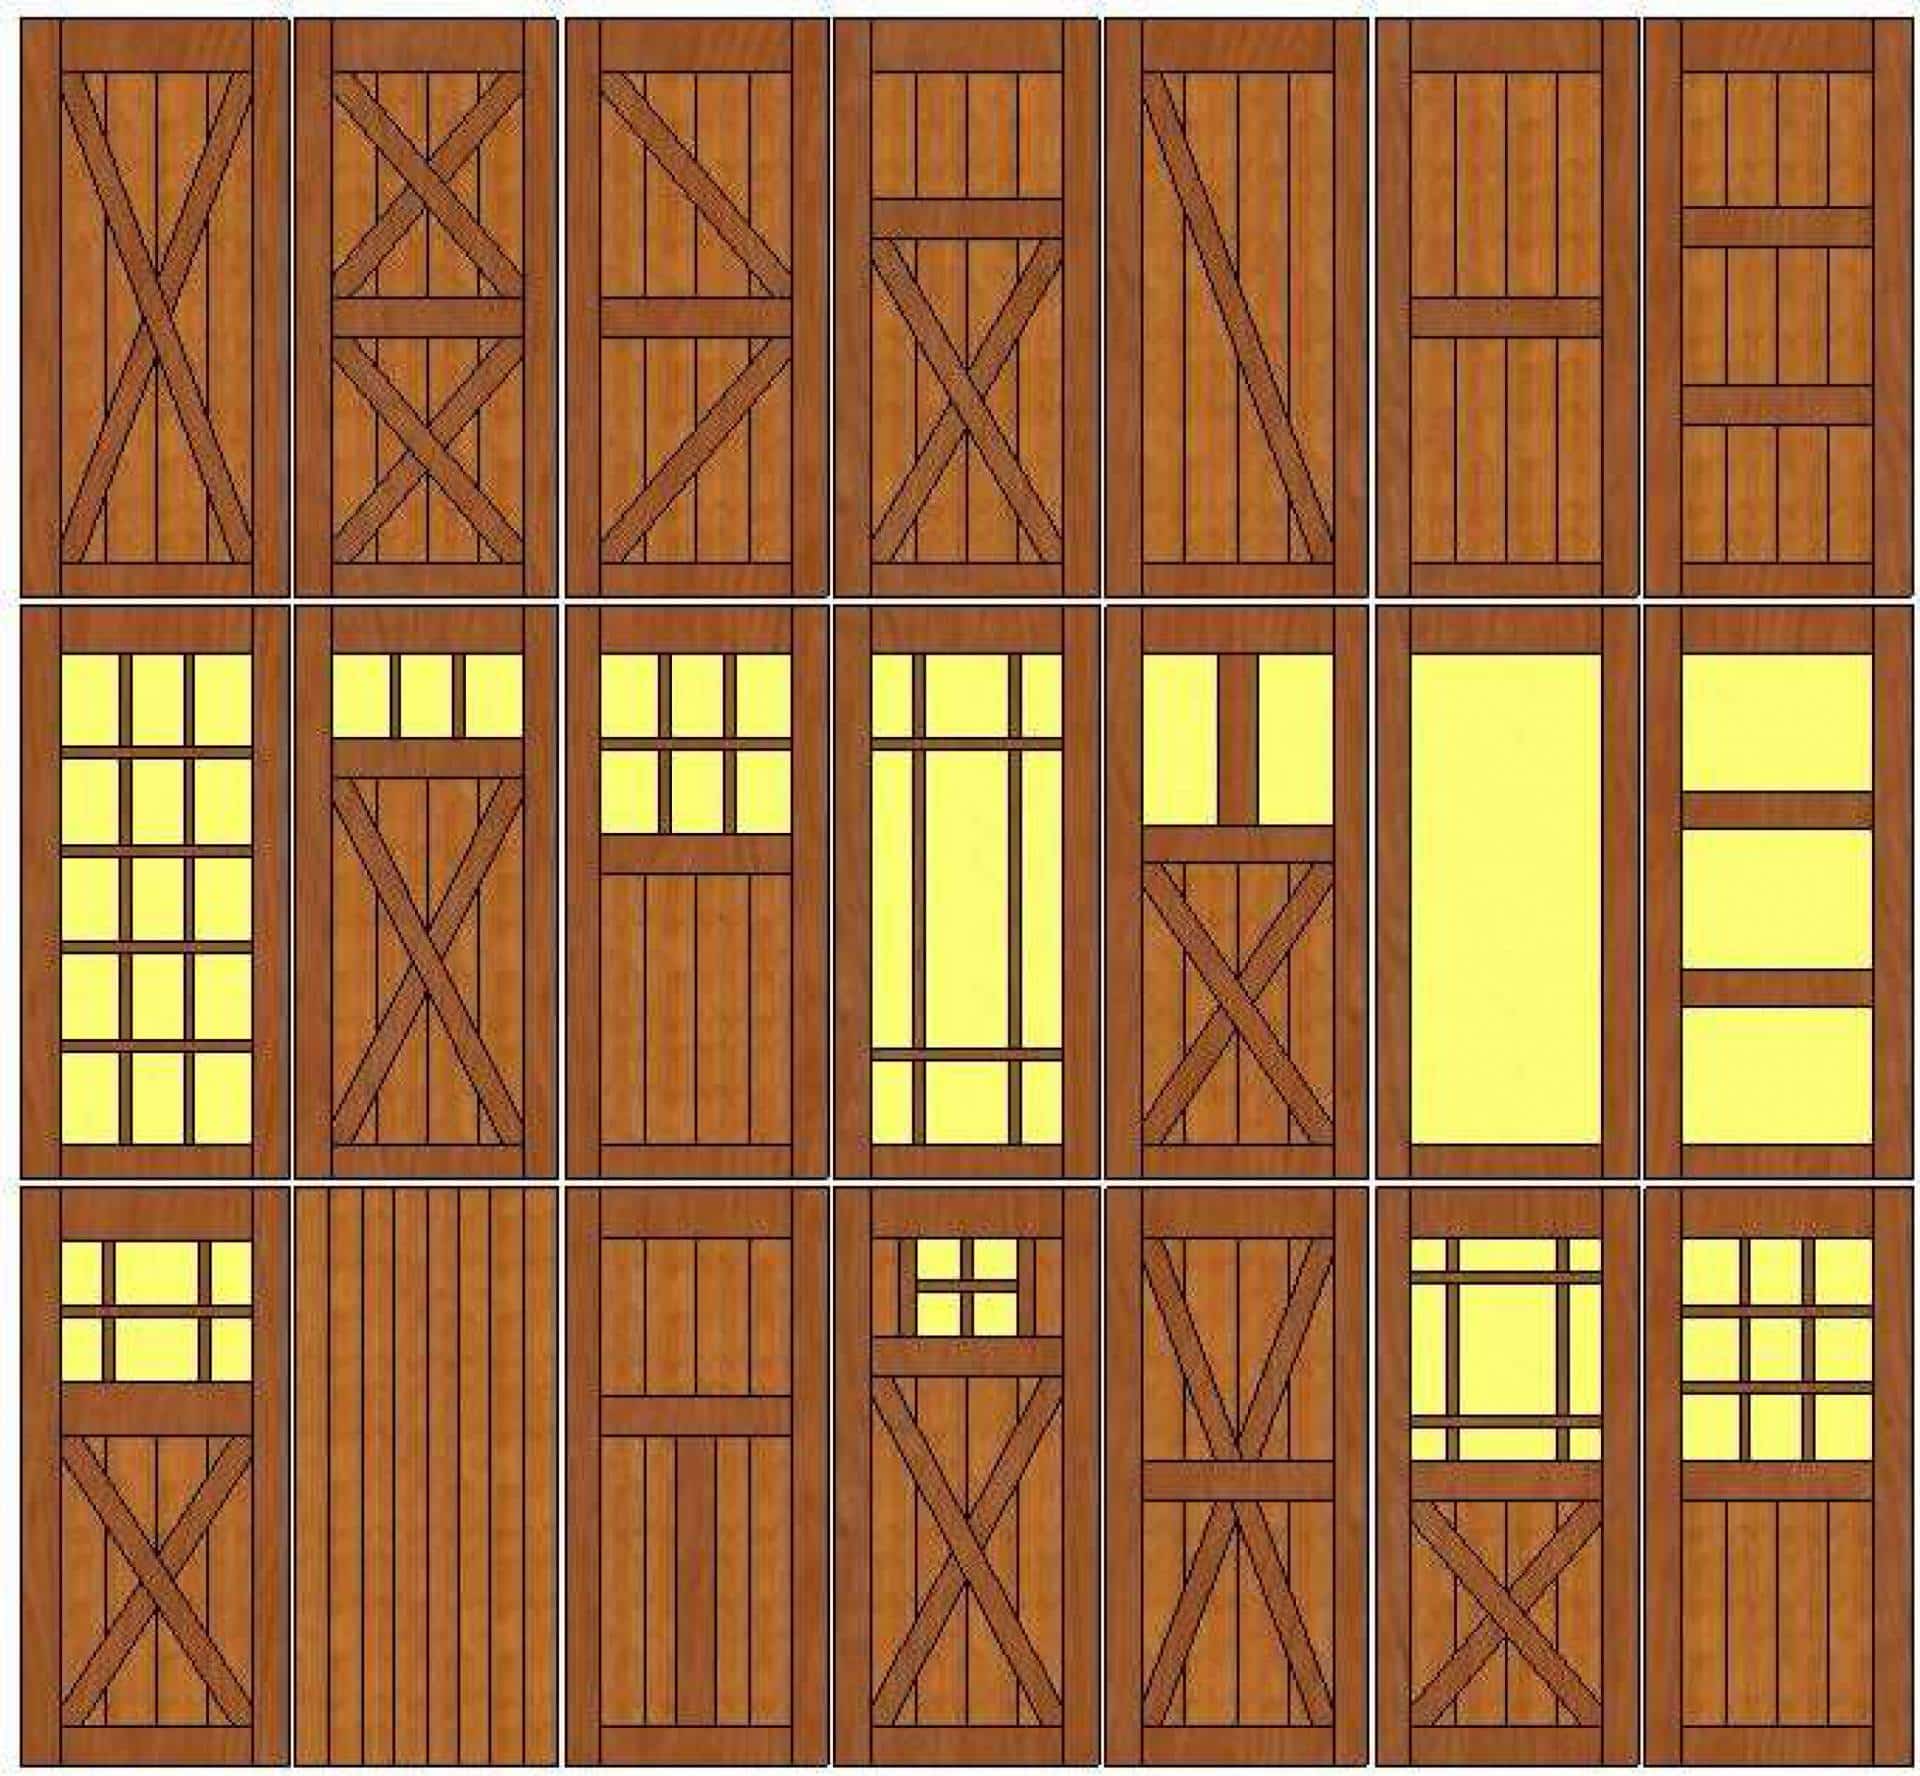 Interior Barn Doors Indoor Sliding, Sliding Barn Style Doors For Interior